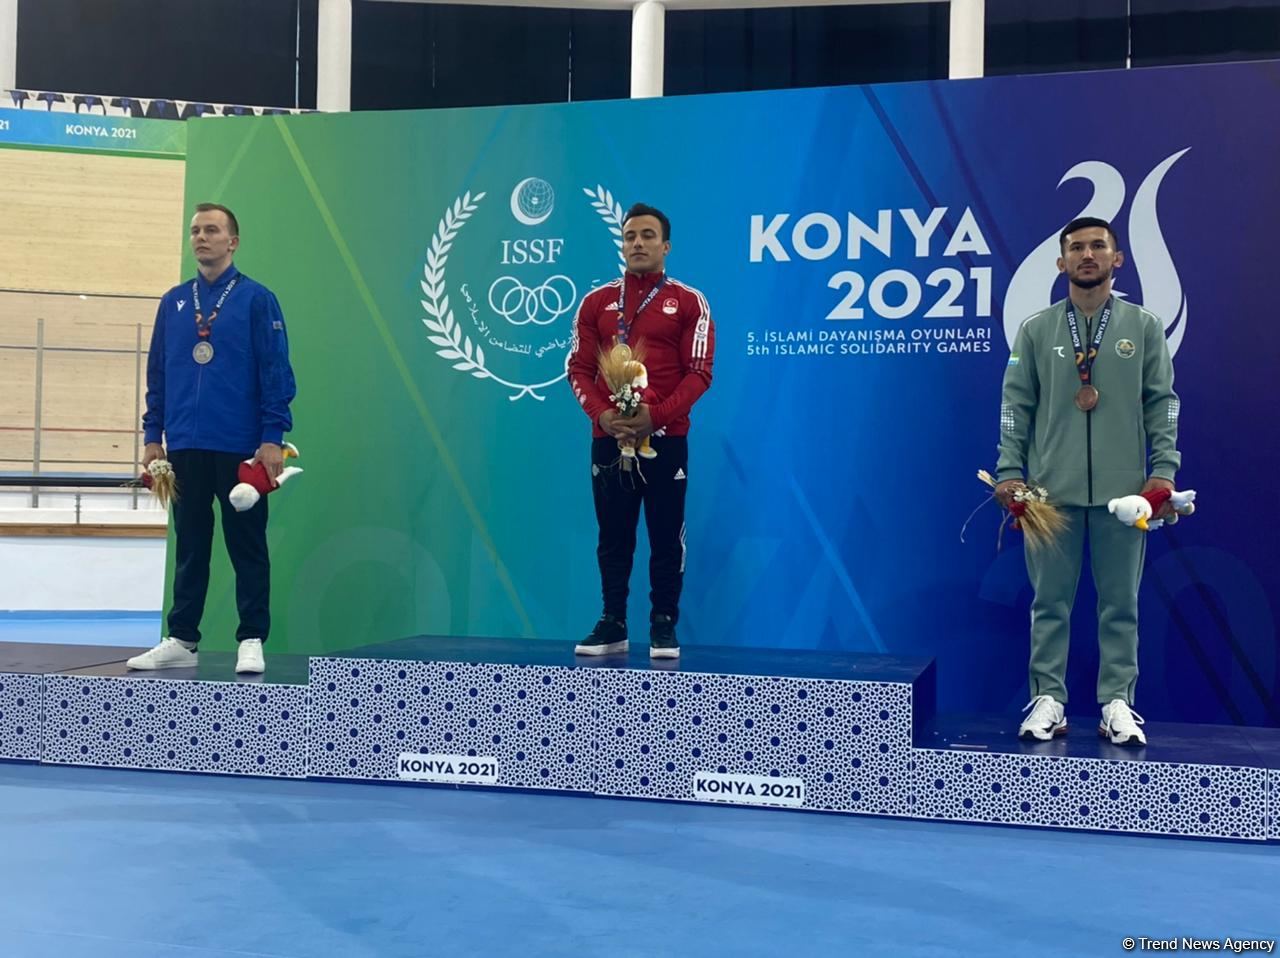 Азербайджан в первой пятерке стран по количеству медалей на Исламиаде в Конье